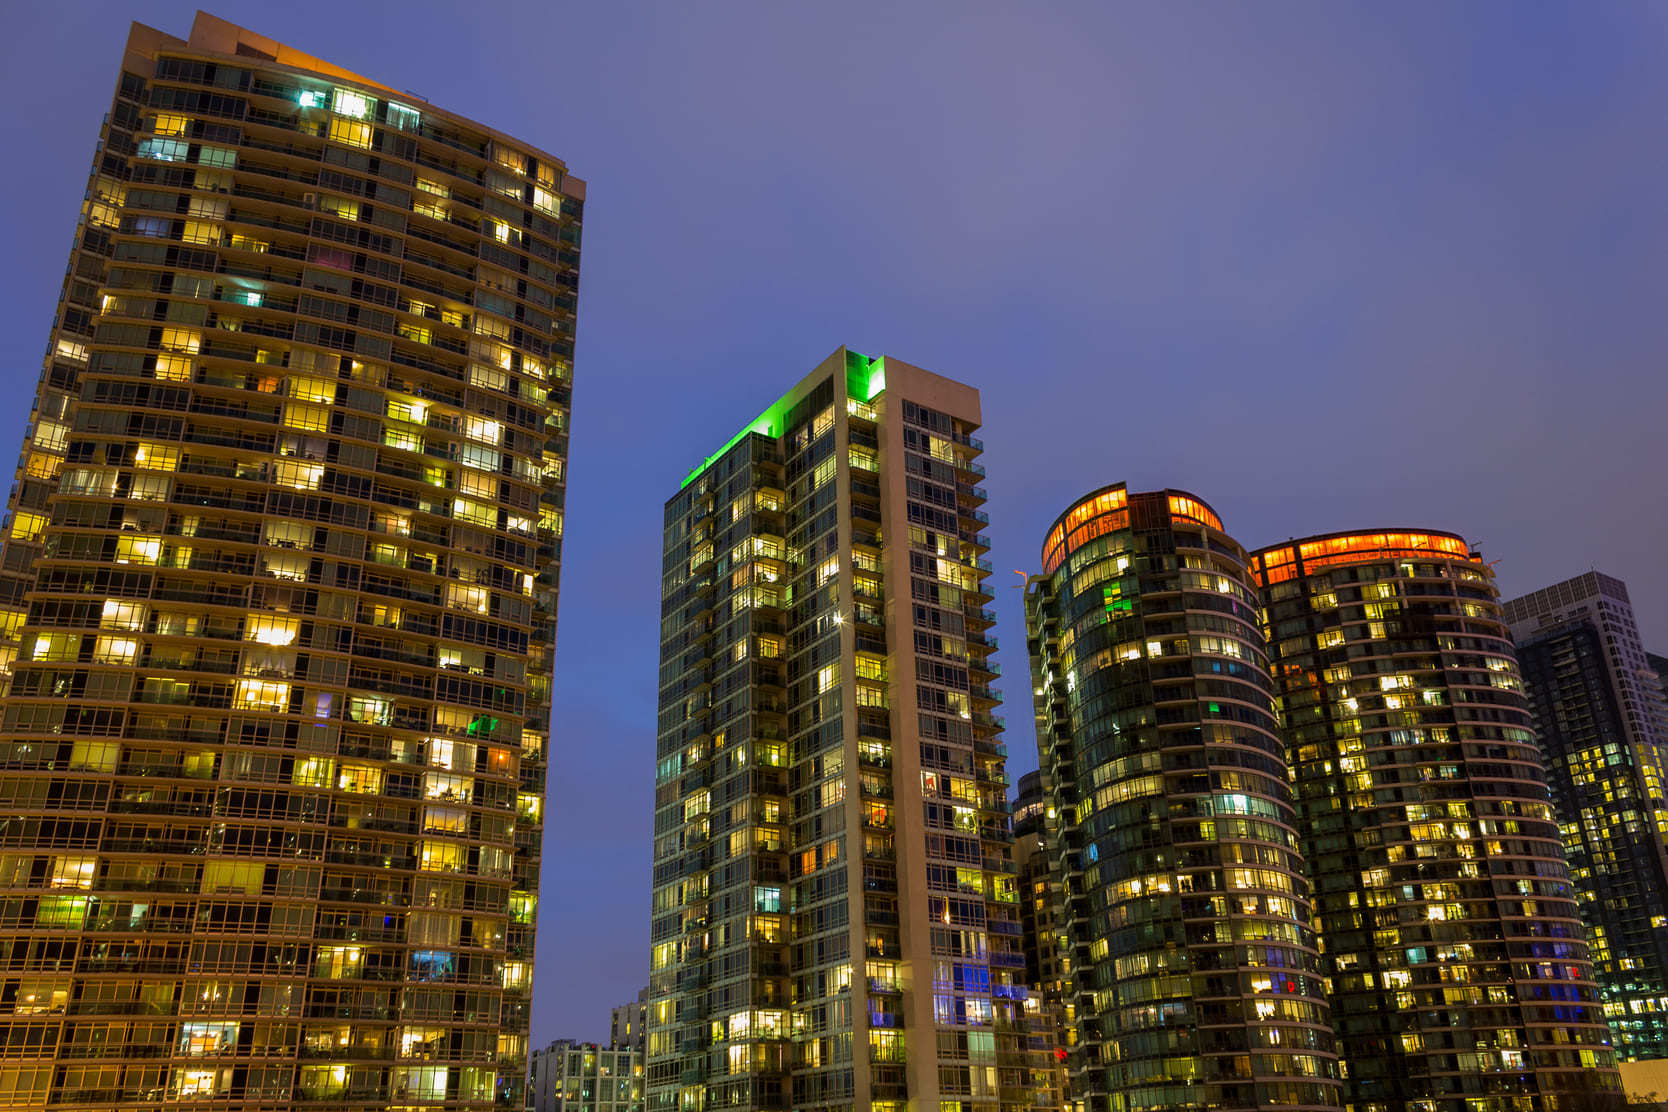 Toronto condo buildings at night